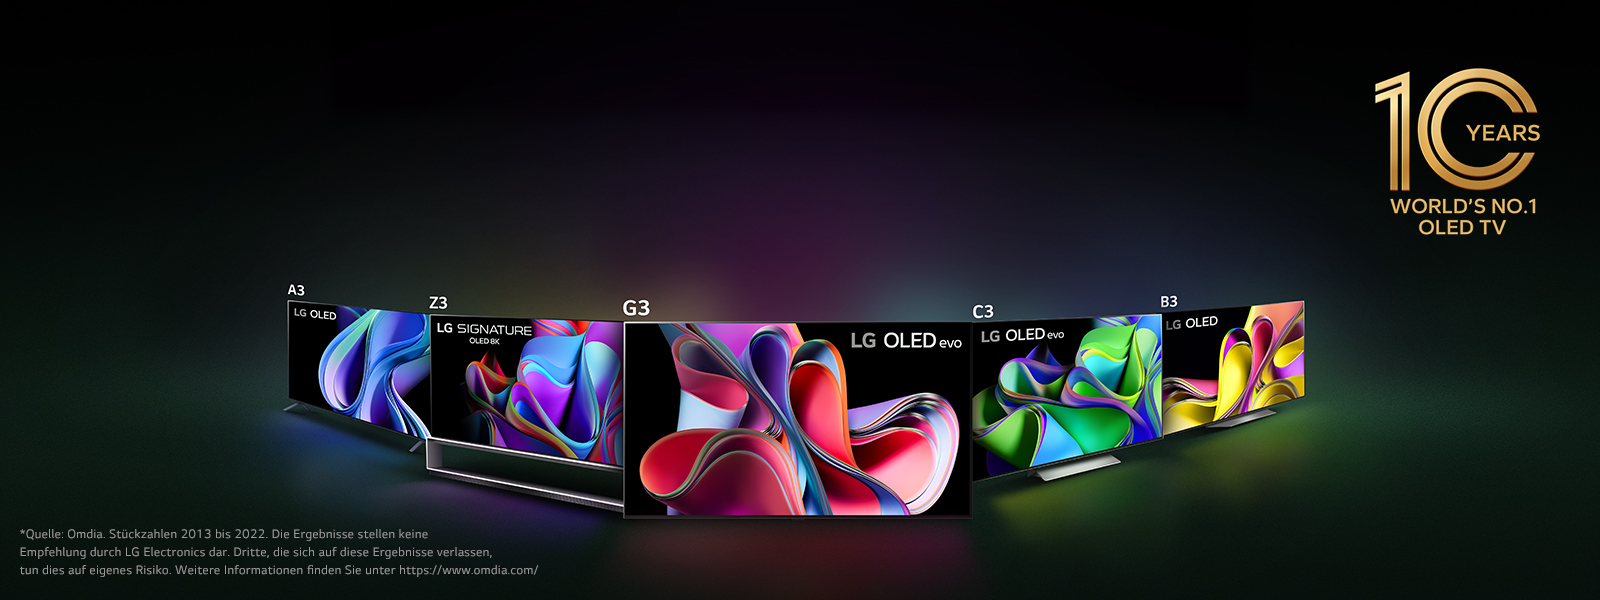 Ein Bild der LG OLED-Produktpalette auf schwarzem Hintergrund in einem Dreieck an den Ecken mit dem nach vorne gerichteten LG OLED G3 in der Mitte. Jedes Fernsehgerät zeigt ein farbenfrohes und abstraktes Kunstwerk auf dem Bildschirm an. Das Emblem „10 Jahre weltweite Nr. 1 OLED TV“ befindet sich auch auf dem Bild. 